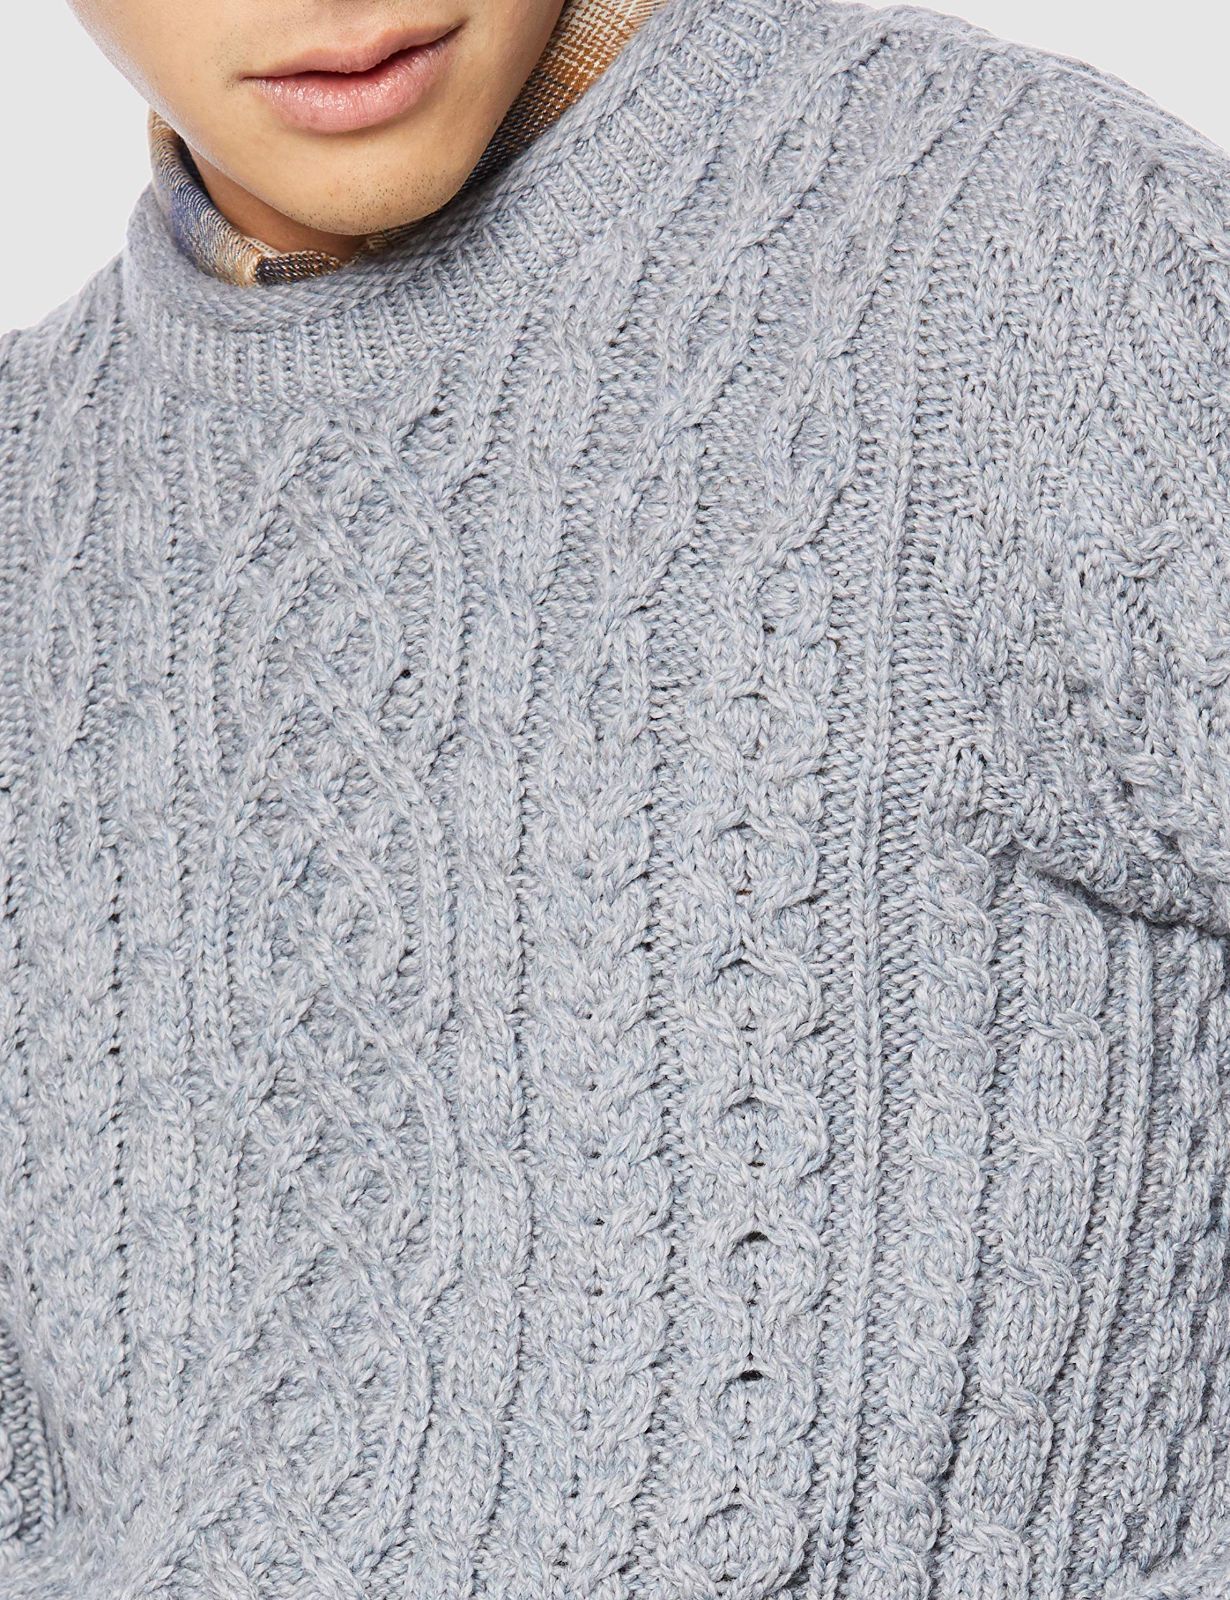 アランウーレンミルズ セーター B420 Aran sweater メンズ ASS13_cold メルカリ